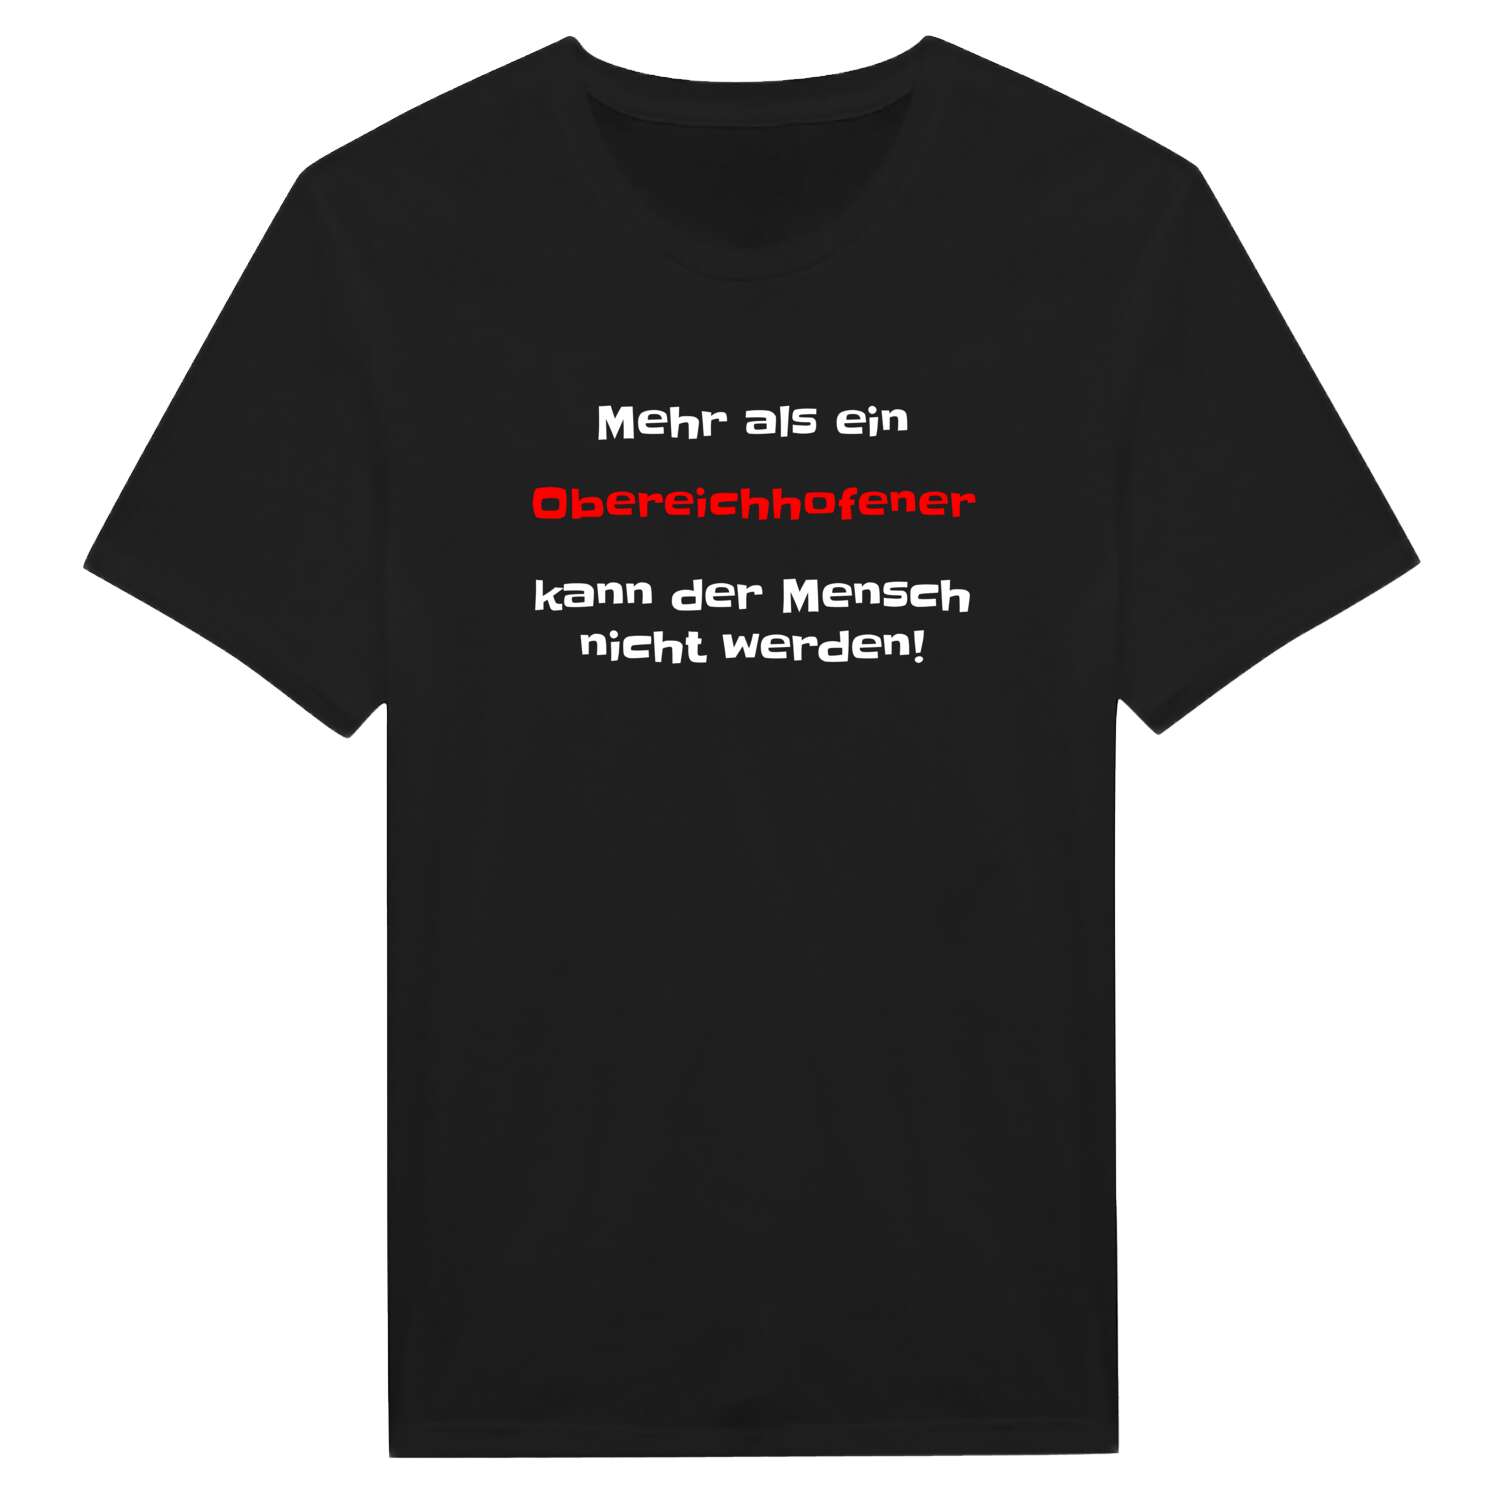 Obereichhofen T-Shirt »Mehr als ein«